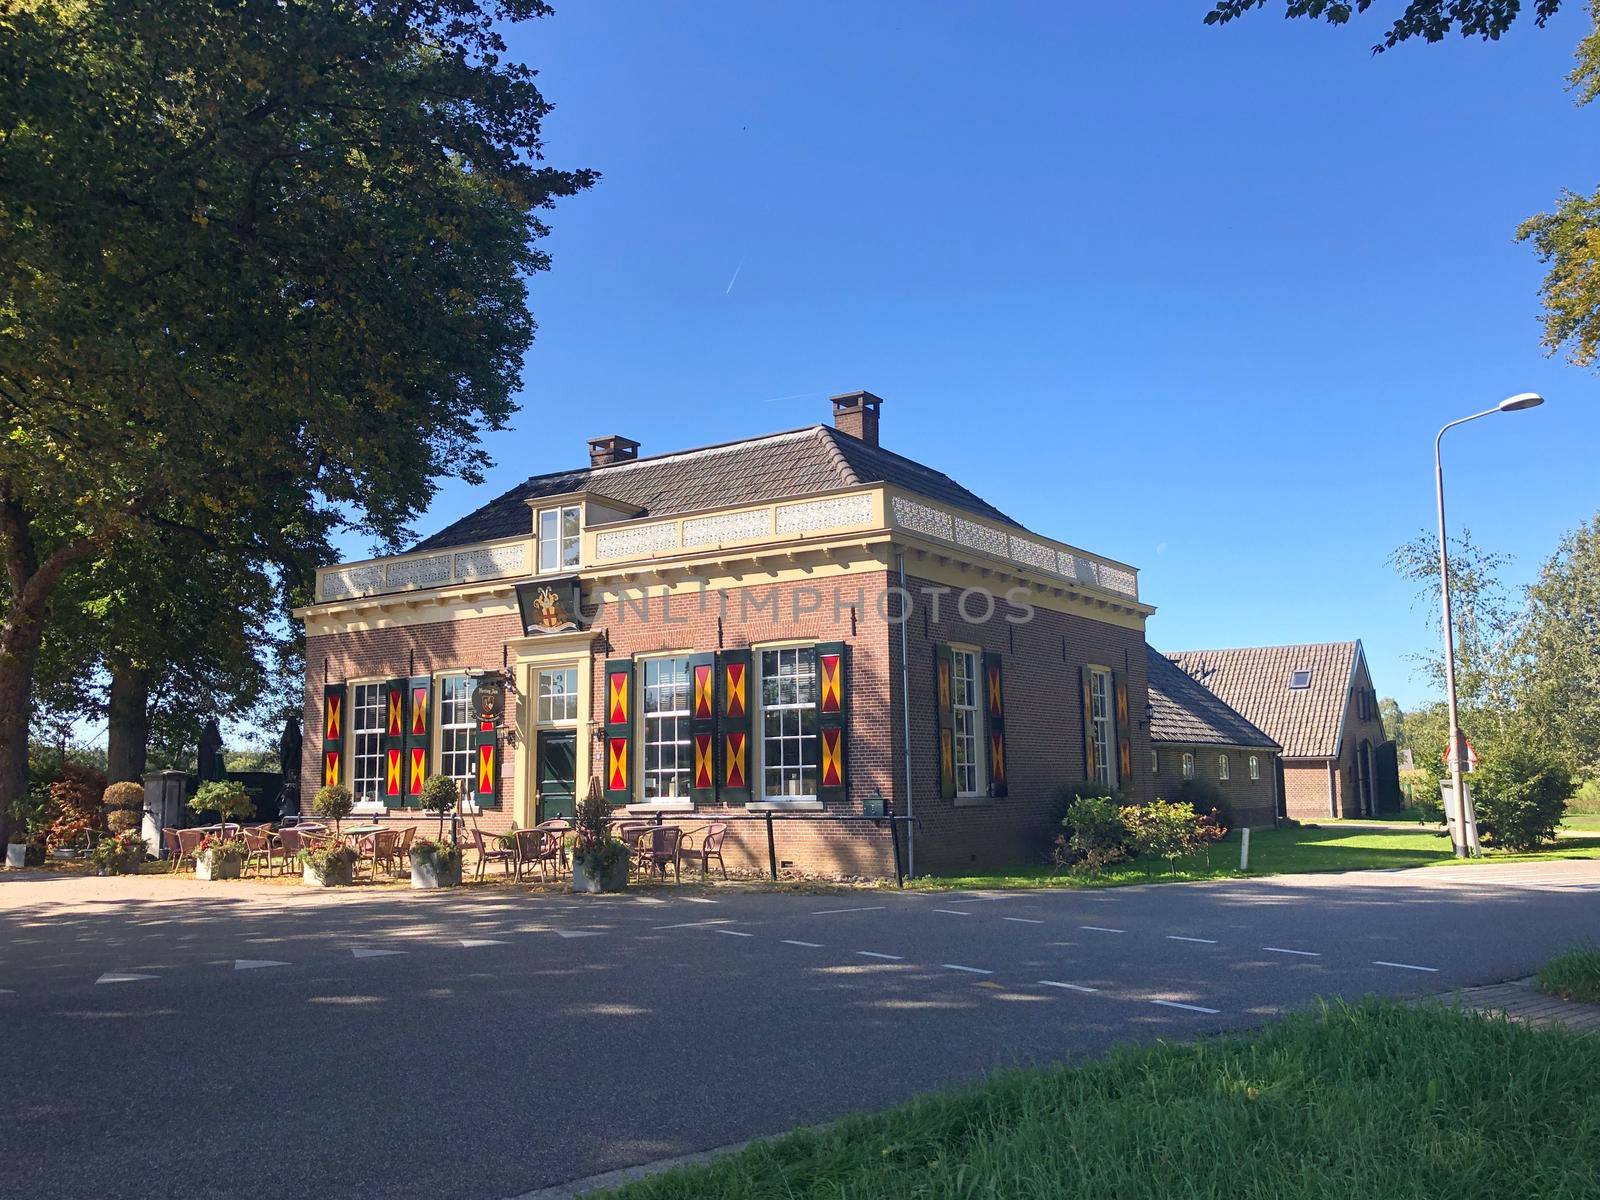 Restaurant 'Het Wapen van Heeckeren’ around Hummelo in Gelderland, The Netherlands